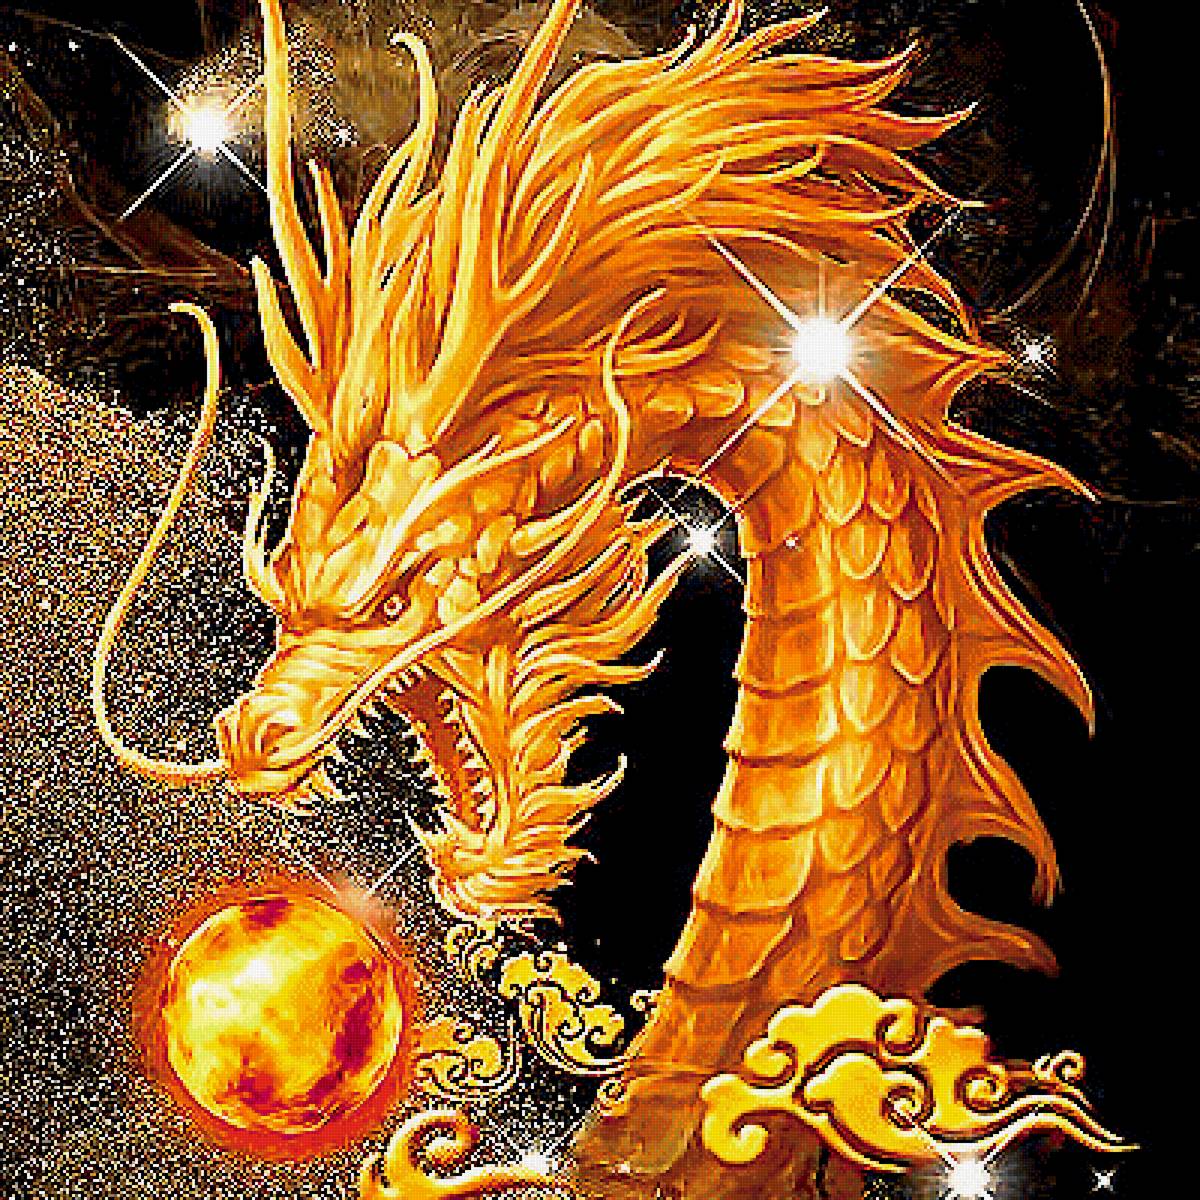 Включи золотой дракон. Фуцанлун дракон. Китайский дракон Фуцанлун. Золотой дракон Эйгона.